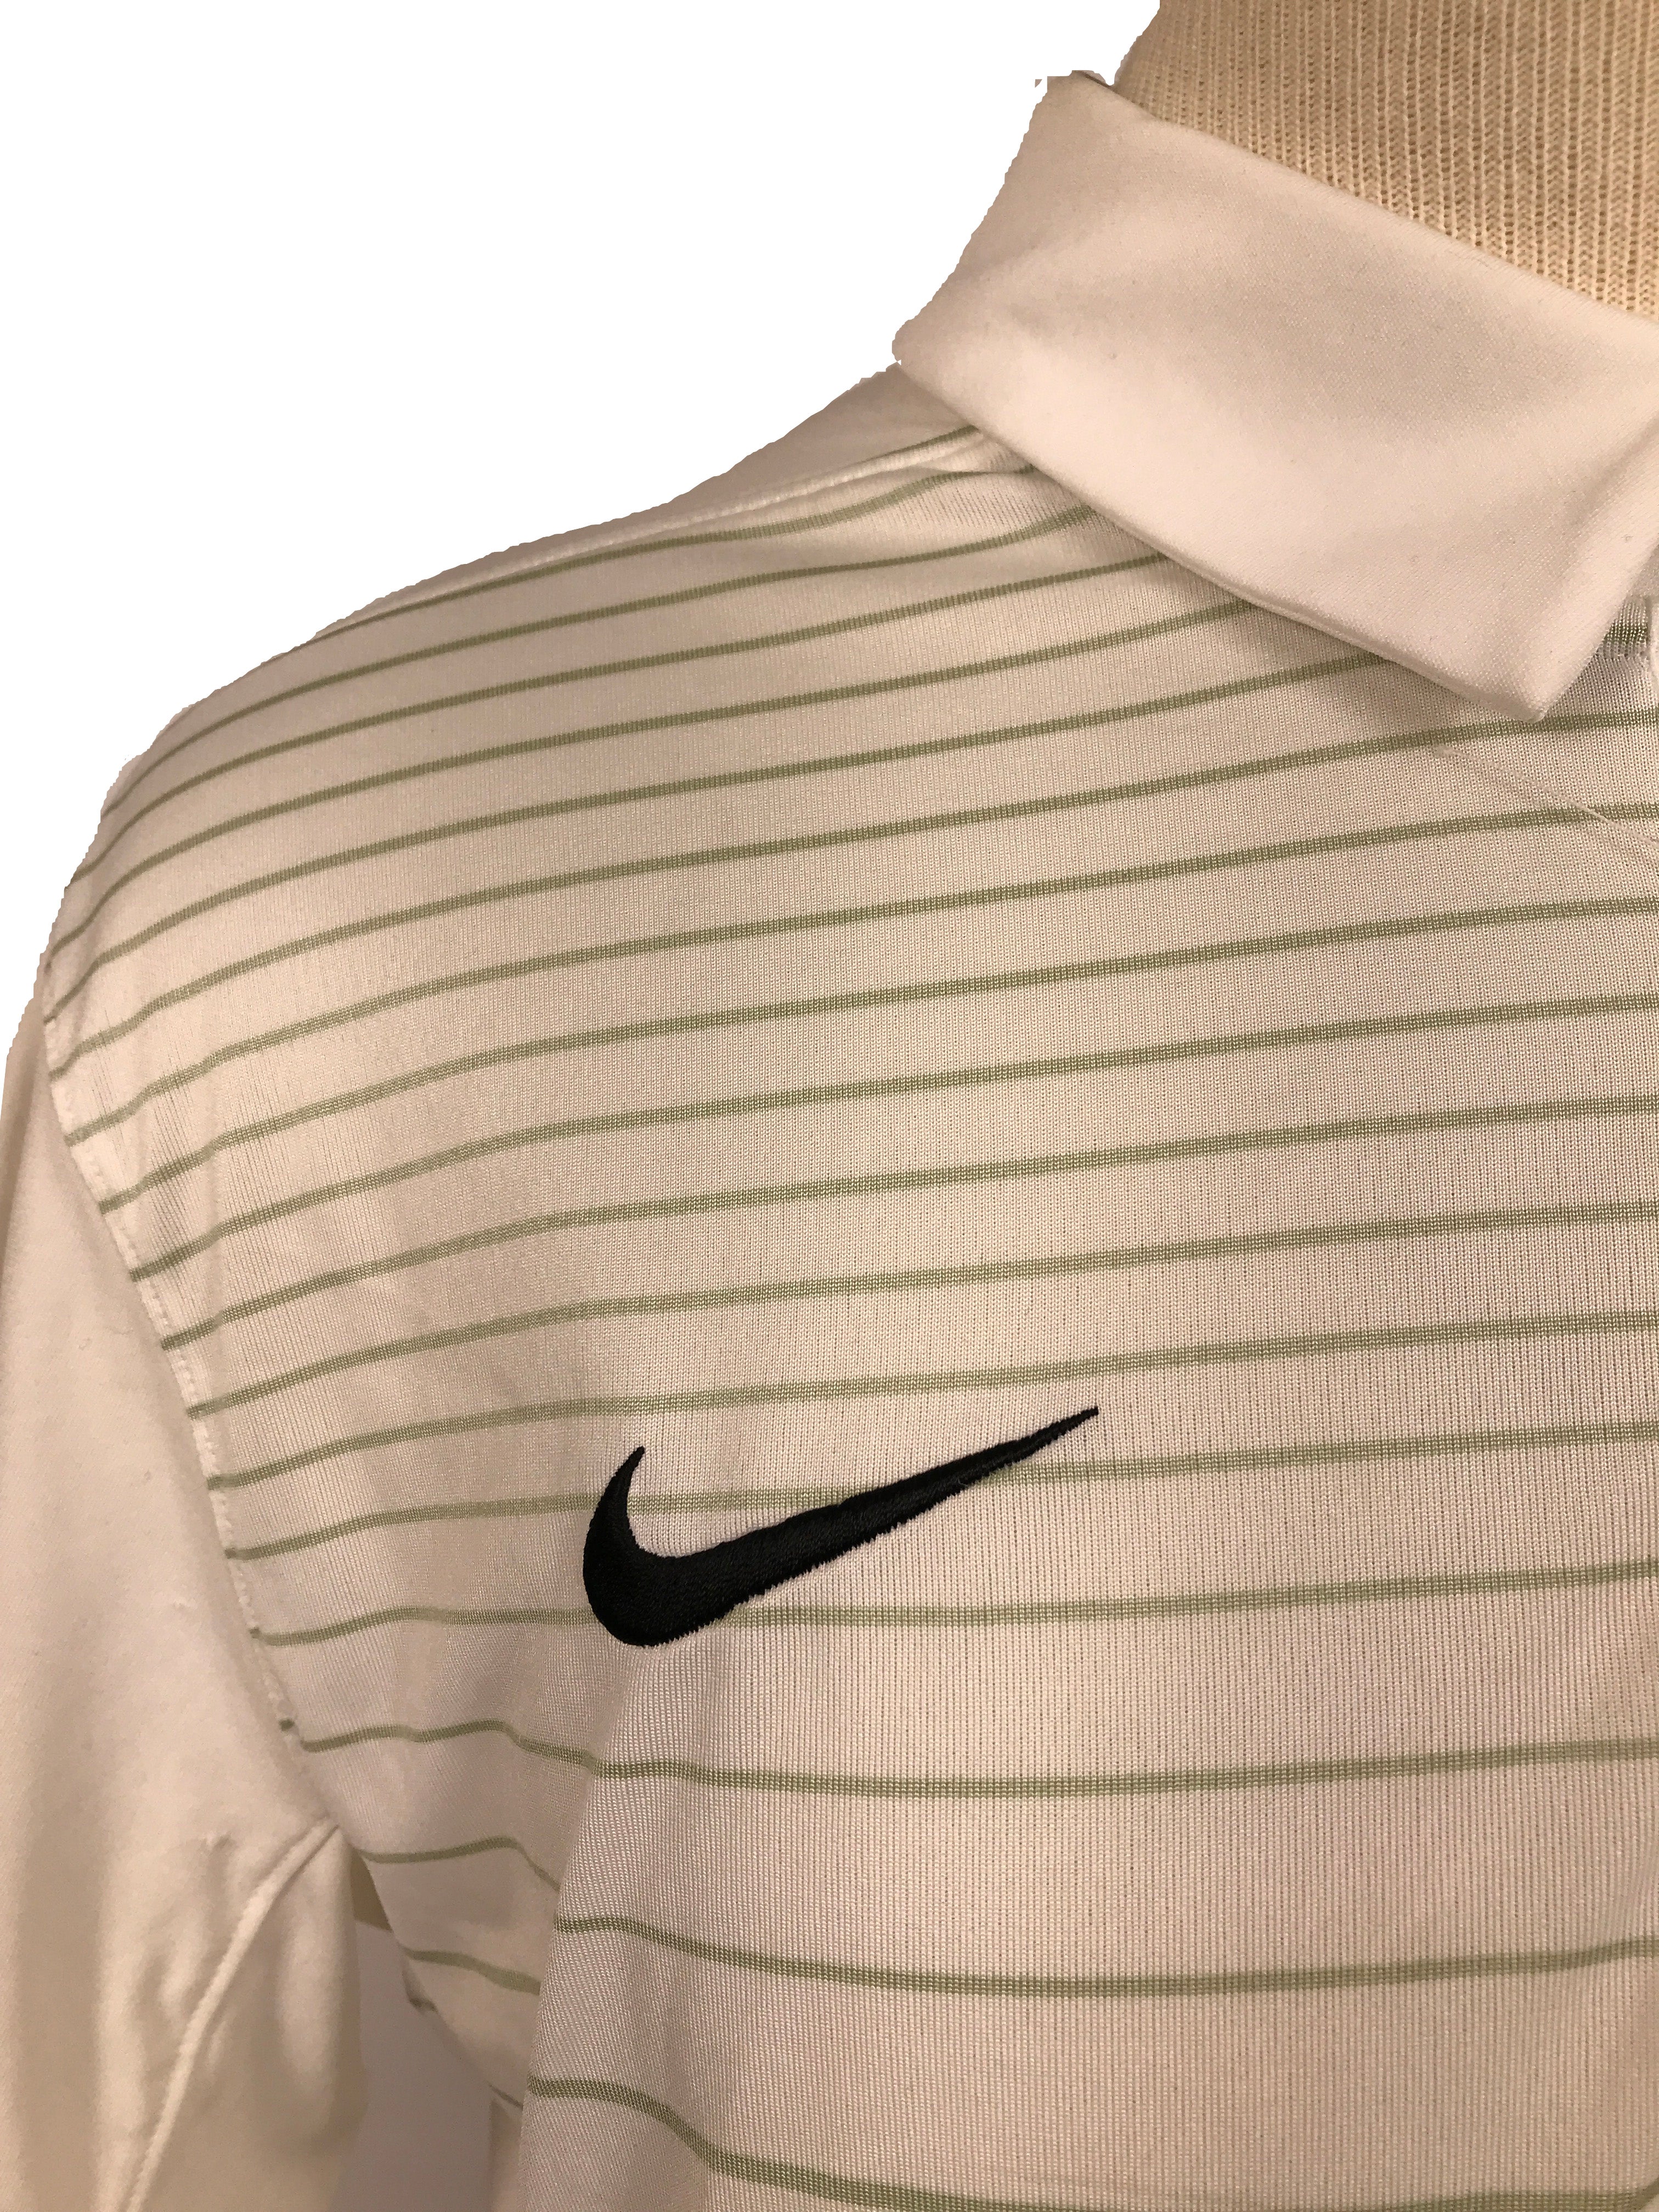 Nike White Striped Polo Men's Size